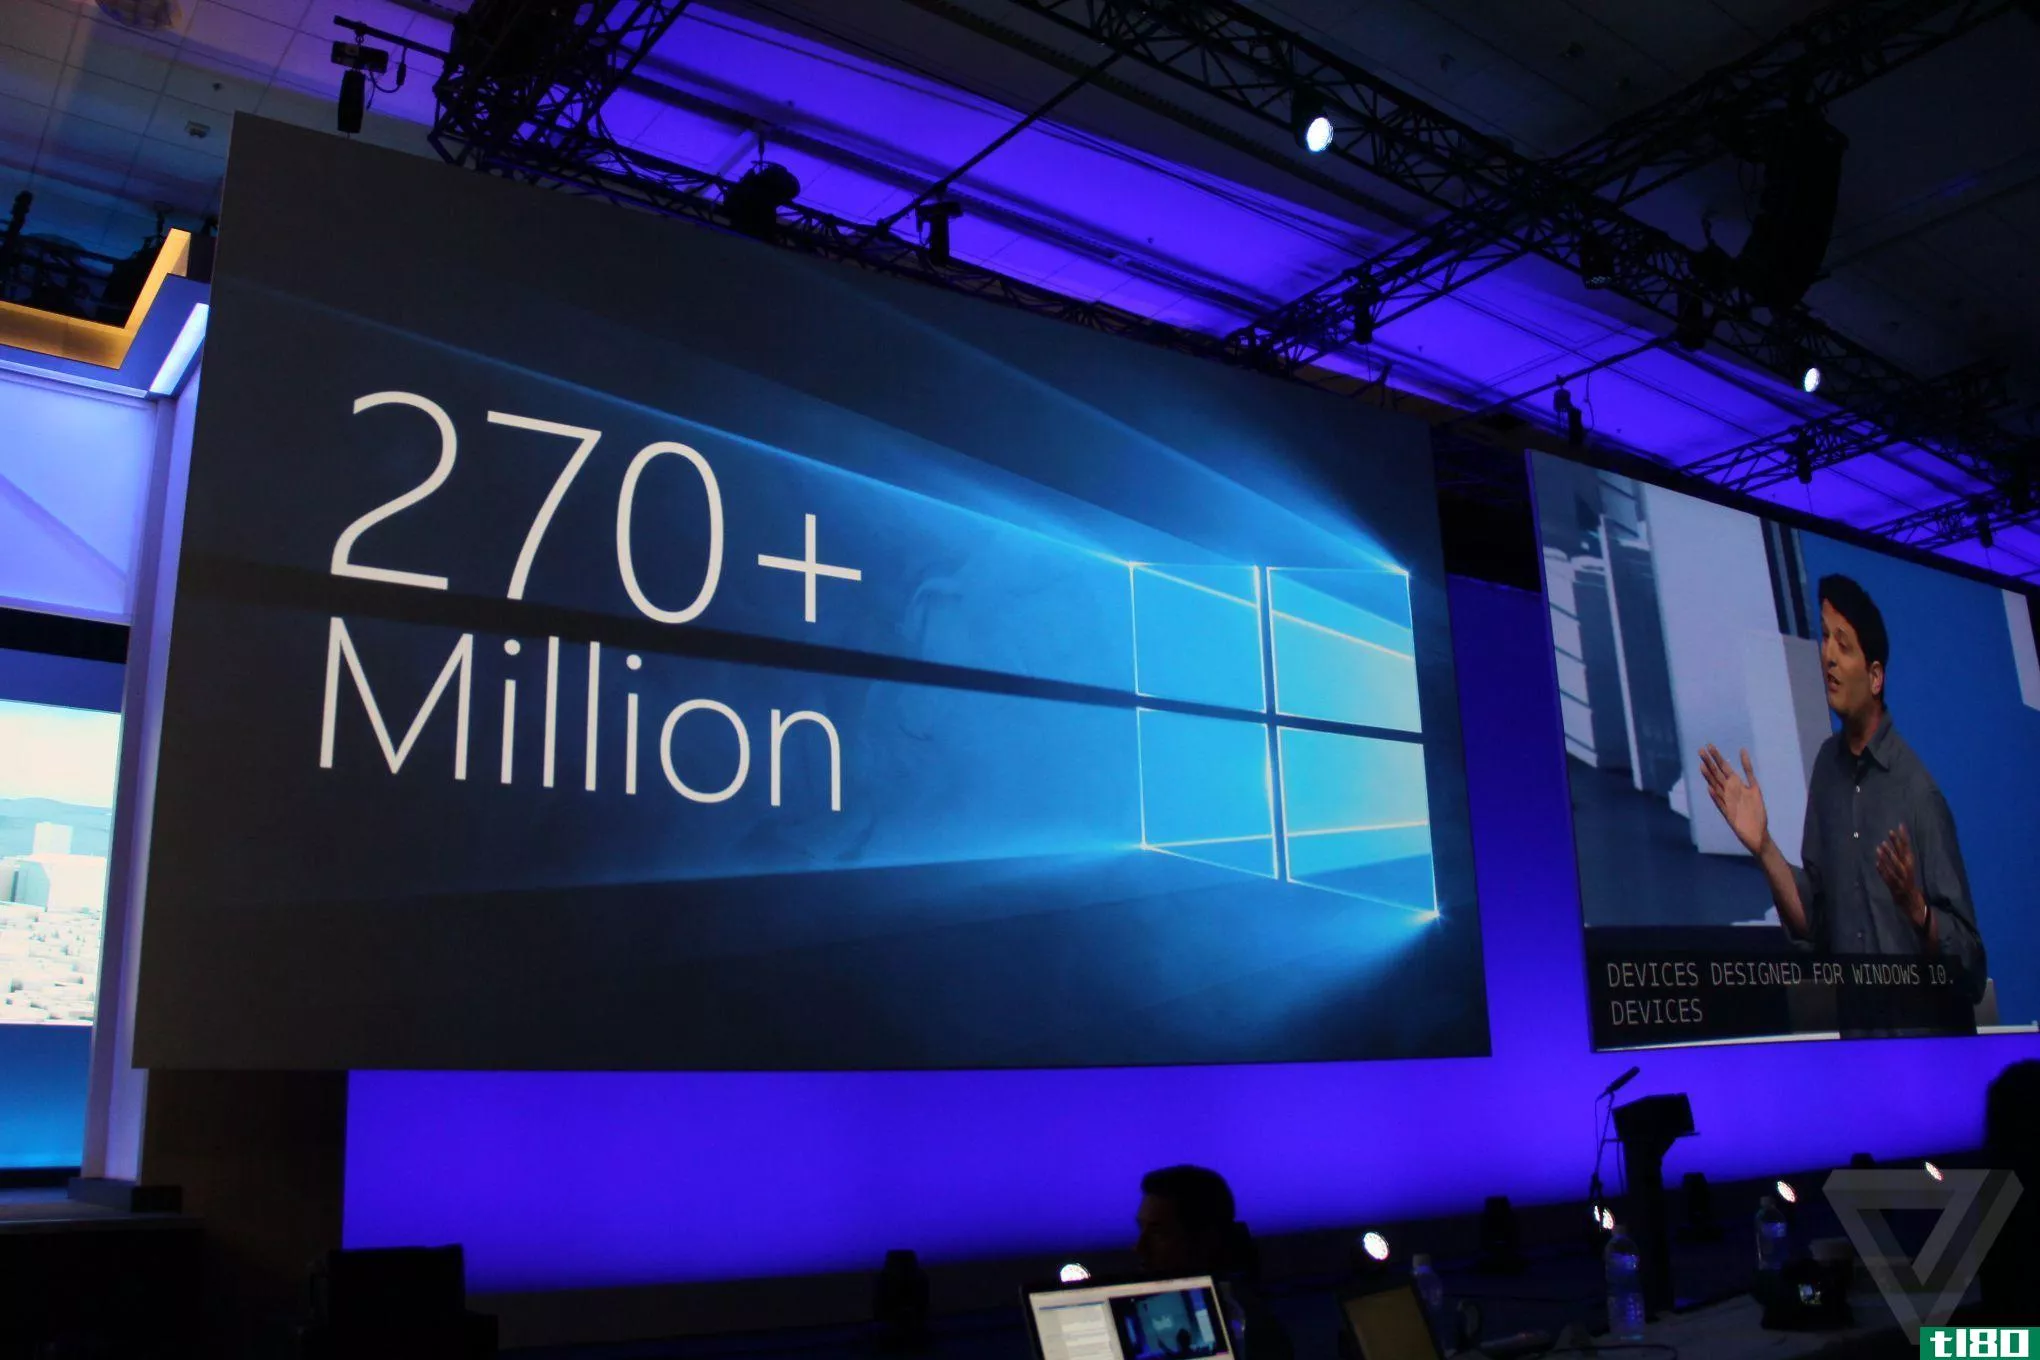 目前有2.7亿台机器运行windows 10